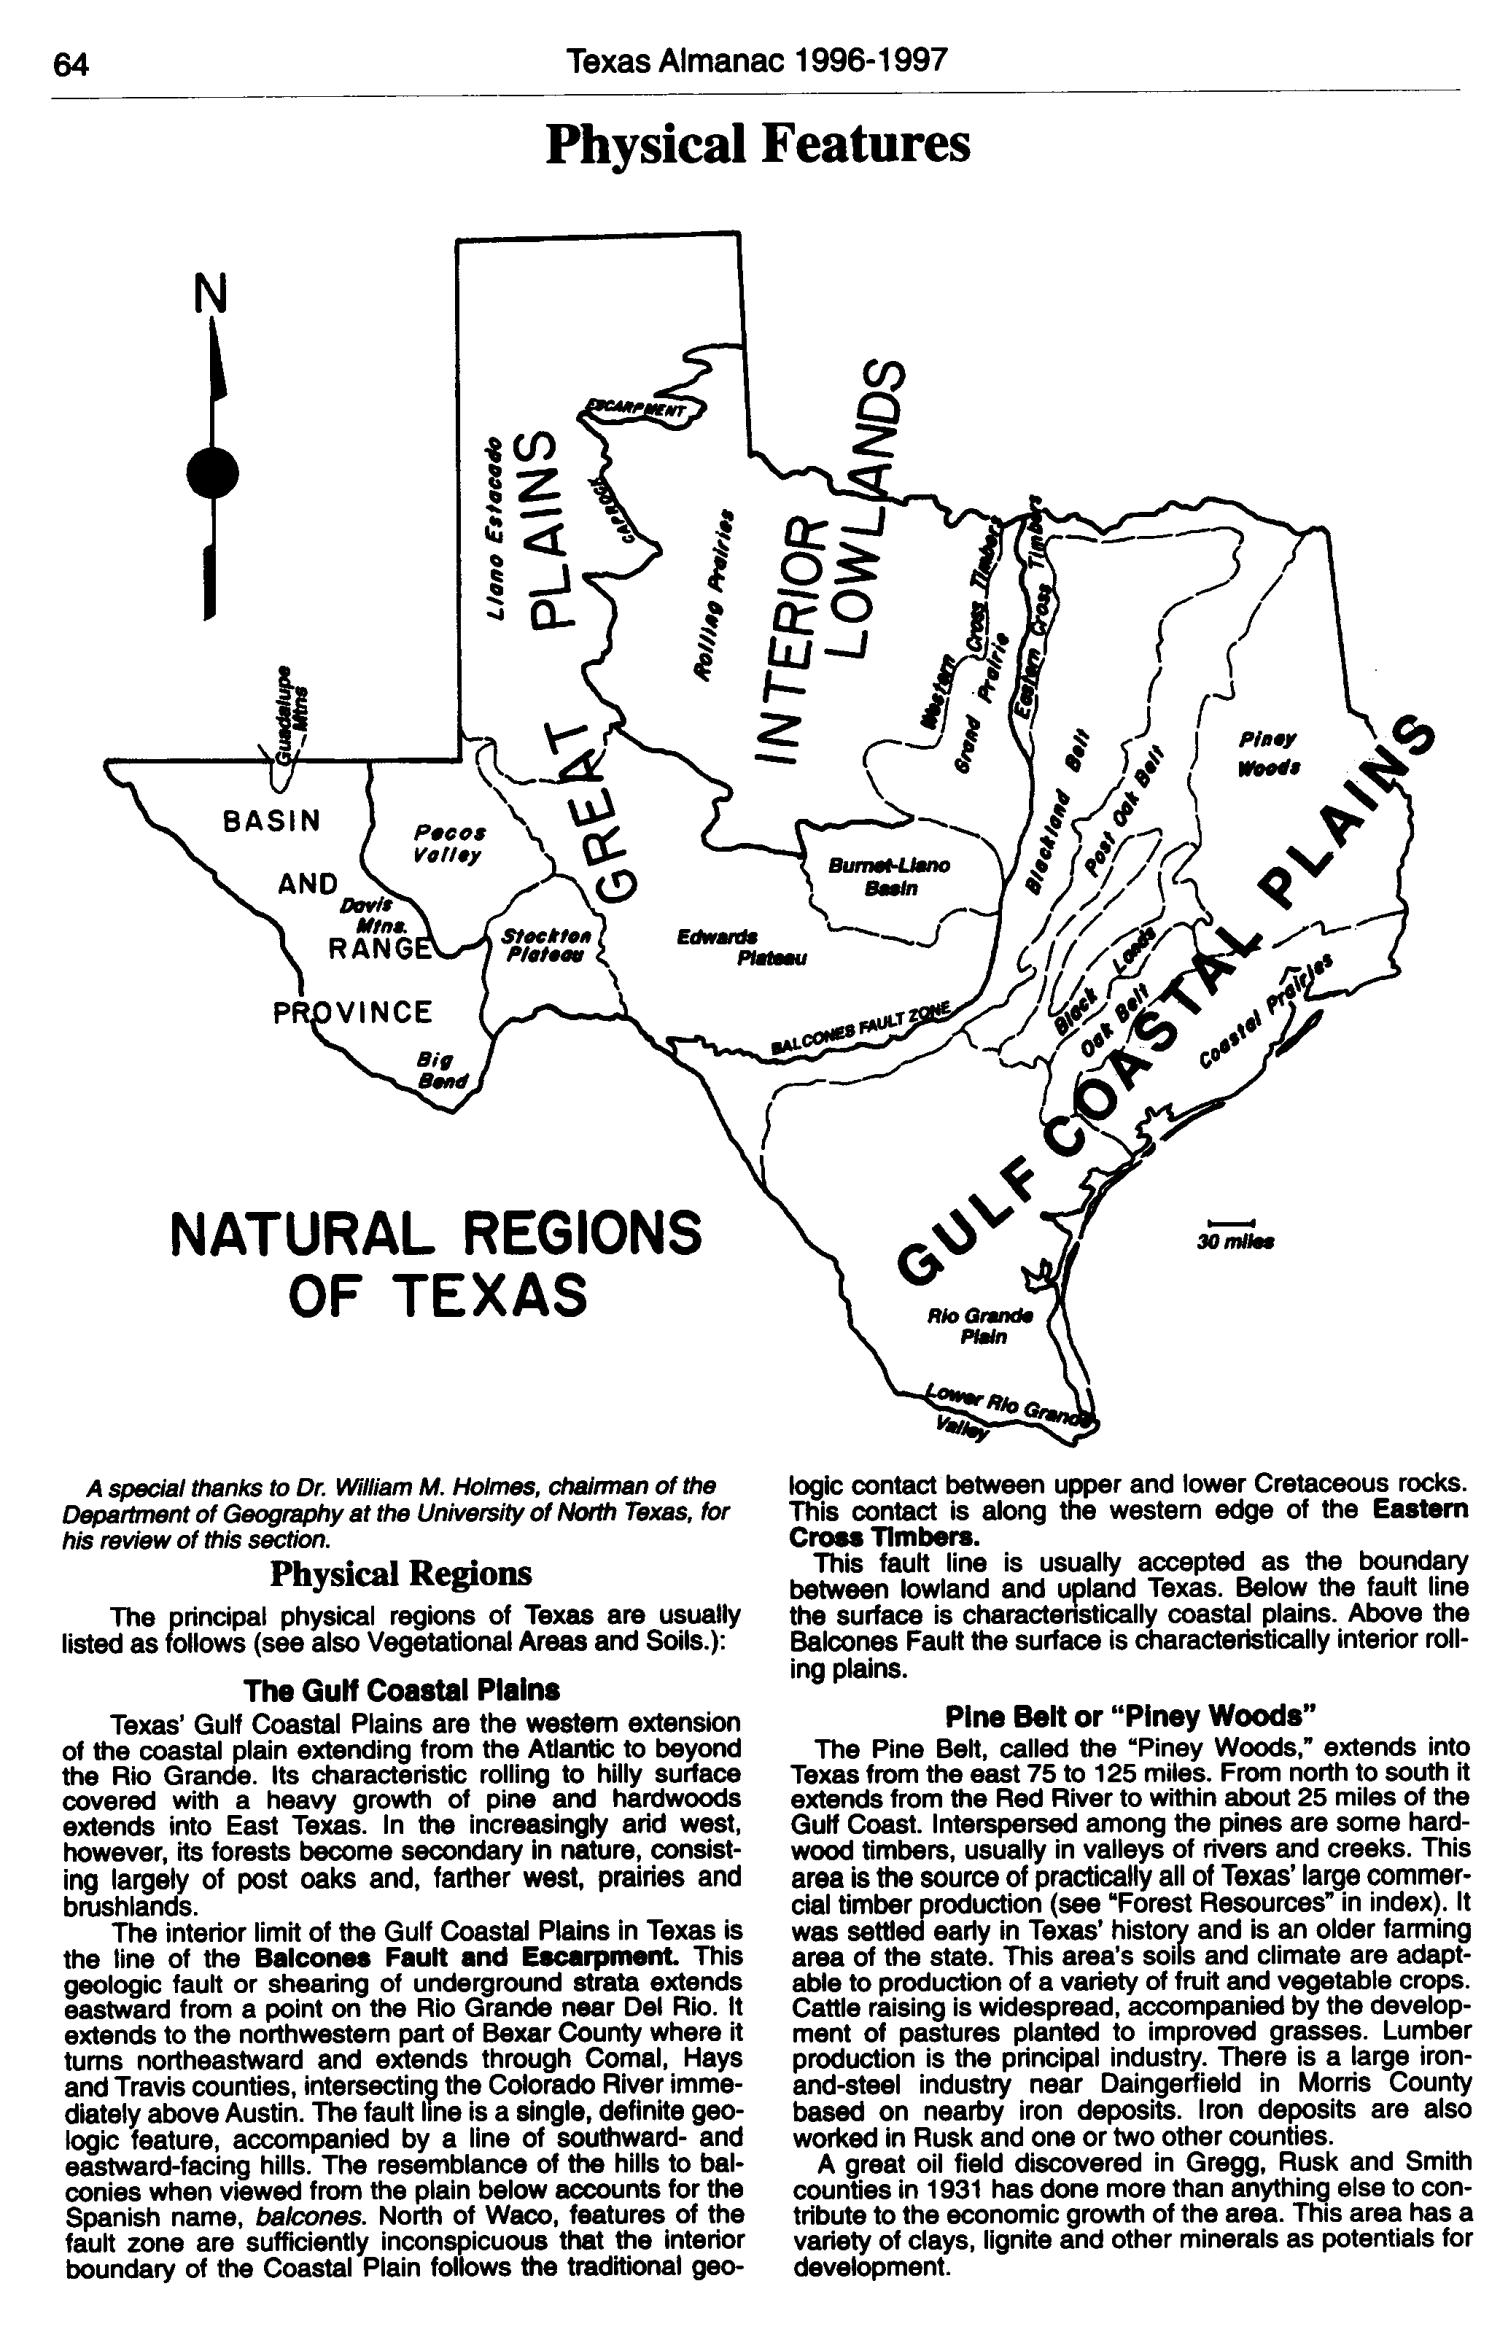 Texas Almanac, 1996-1997
                                                
                                                    64
                                                